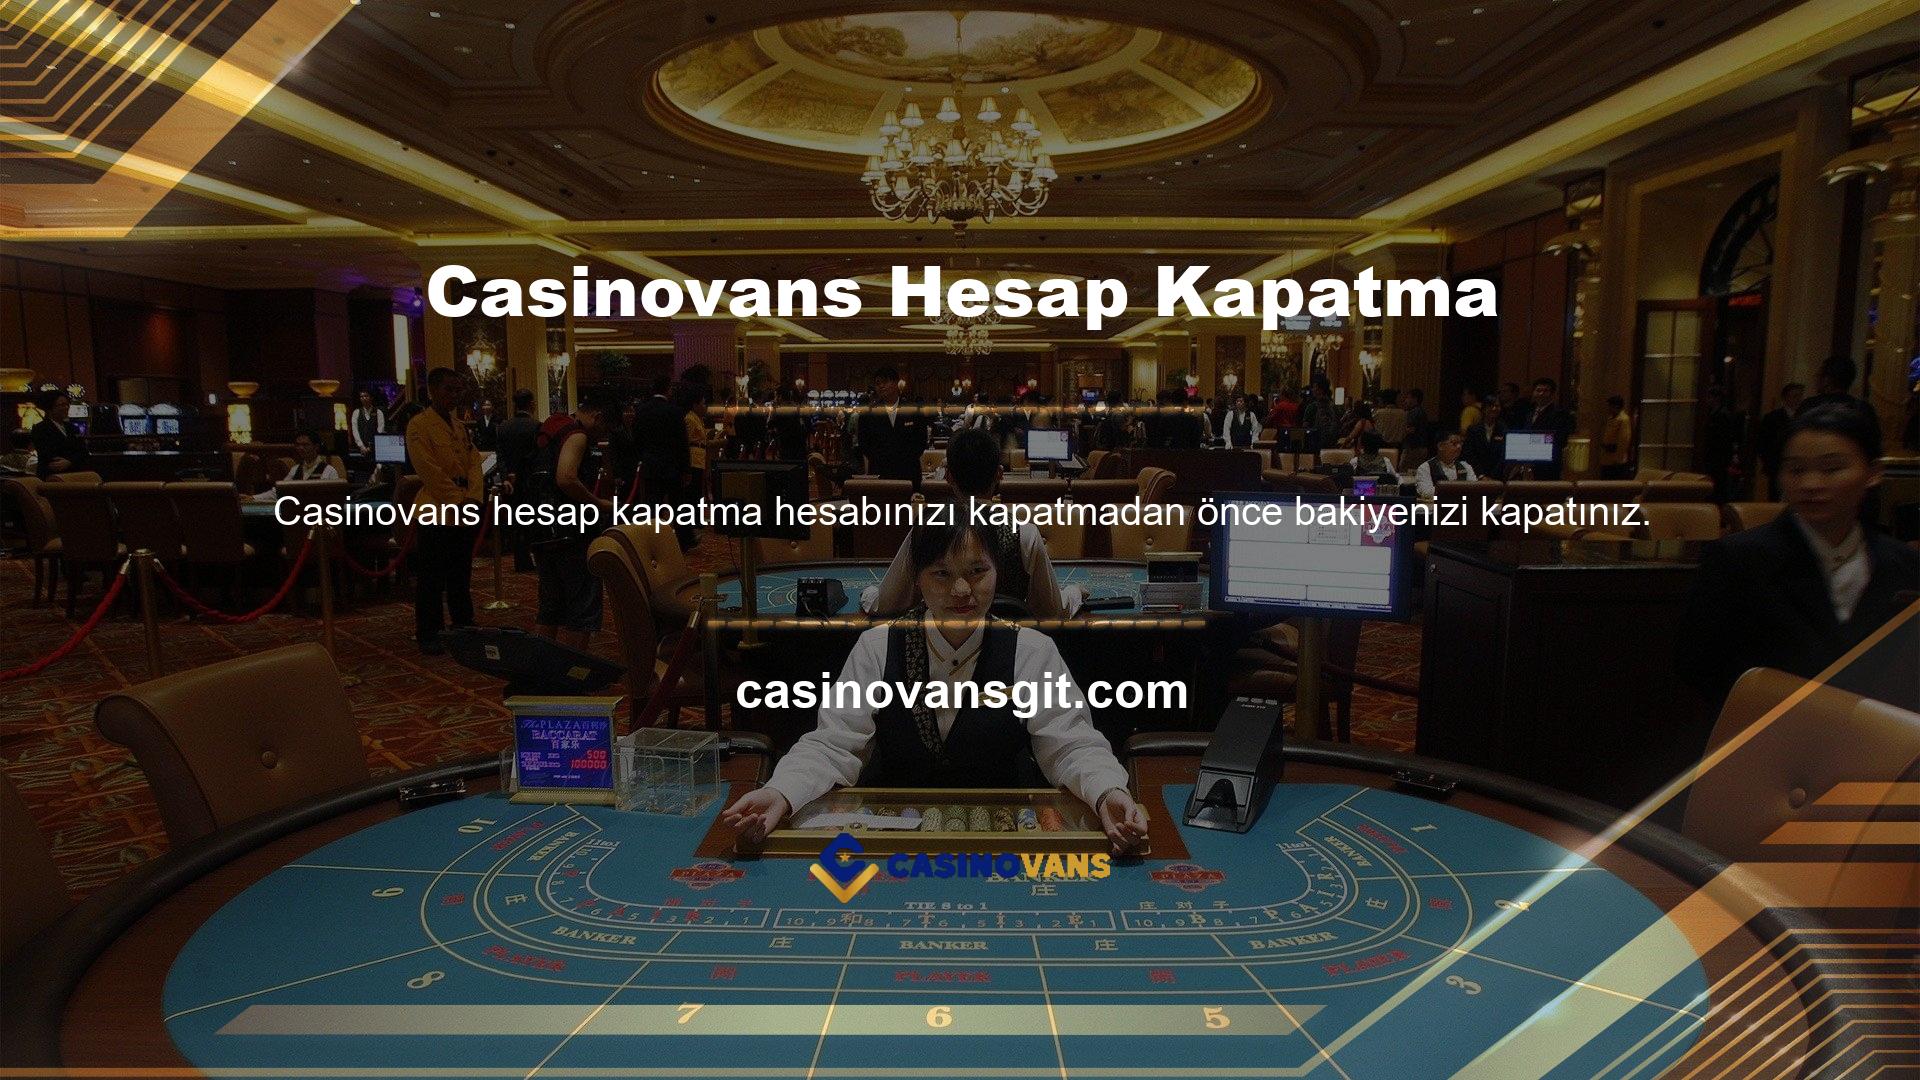 Türkçe bir site kullandığınız ve Türkiye'den Casinovans giriş işlemini tamamladığınız için yeni açtığınız sayfa Türkçeye çevrilecektir